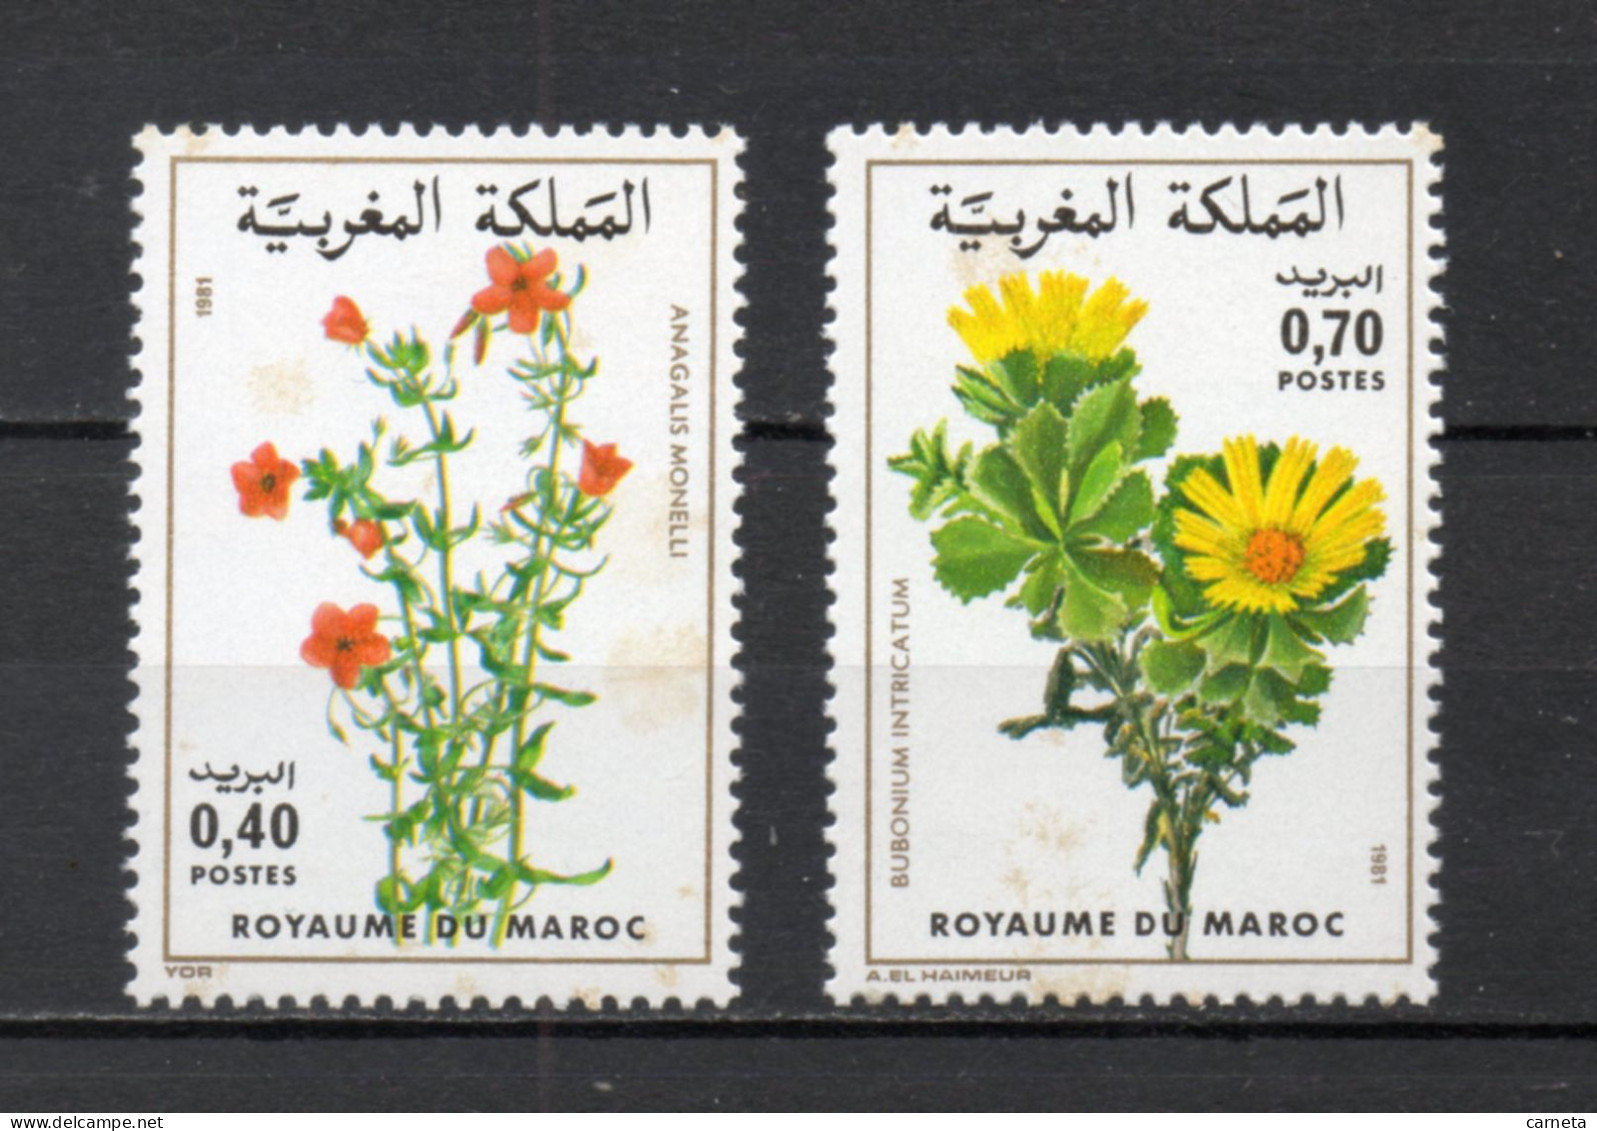 MAROC N°  880 + 881    NEUFS SANS CHARNIERE  COTE 3.50€    FLEUR FLORE VOIR DESCRIPTION - Marokko (1956-...)